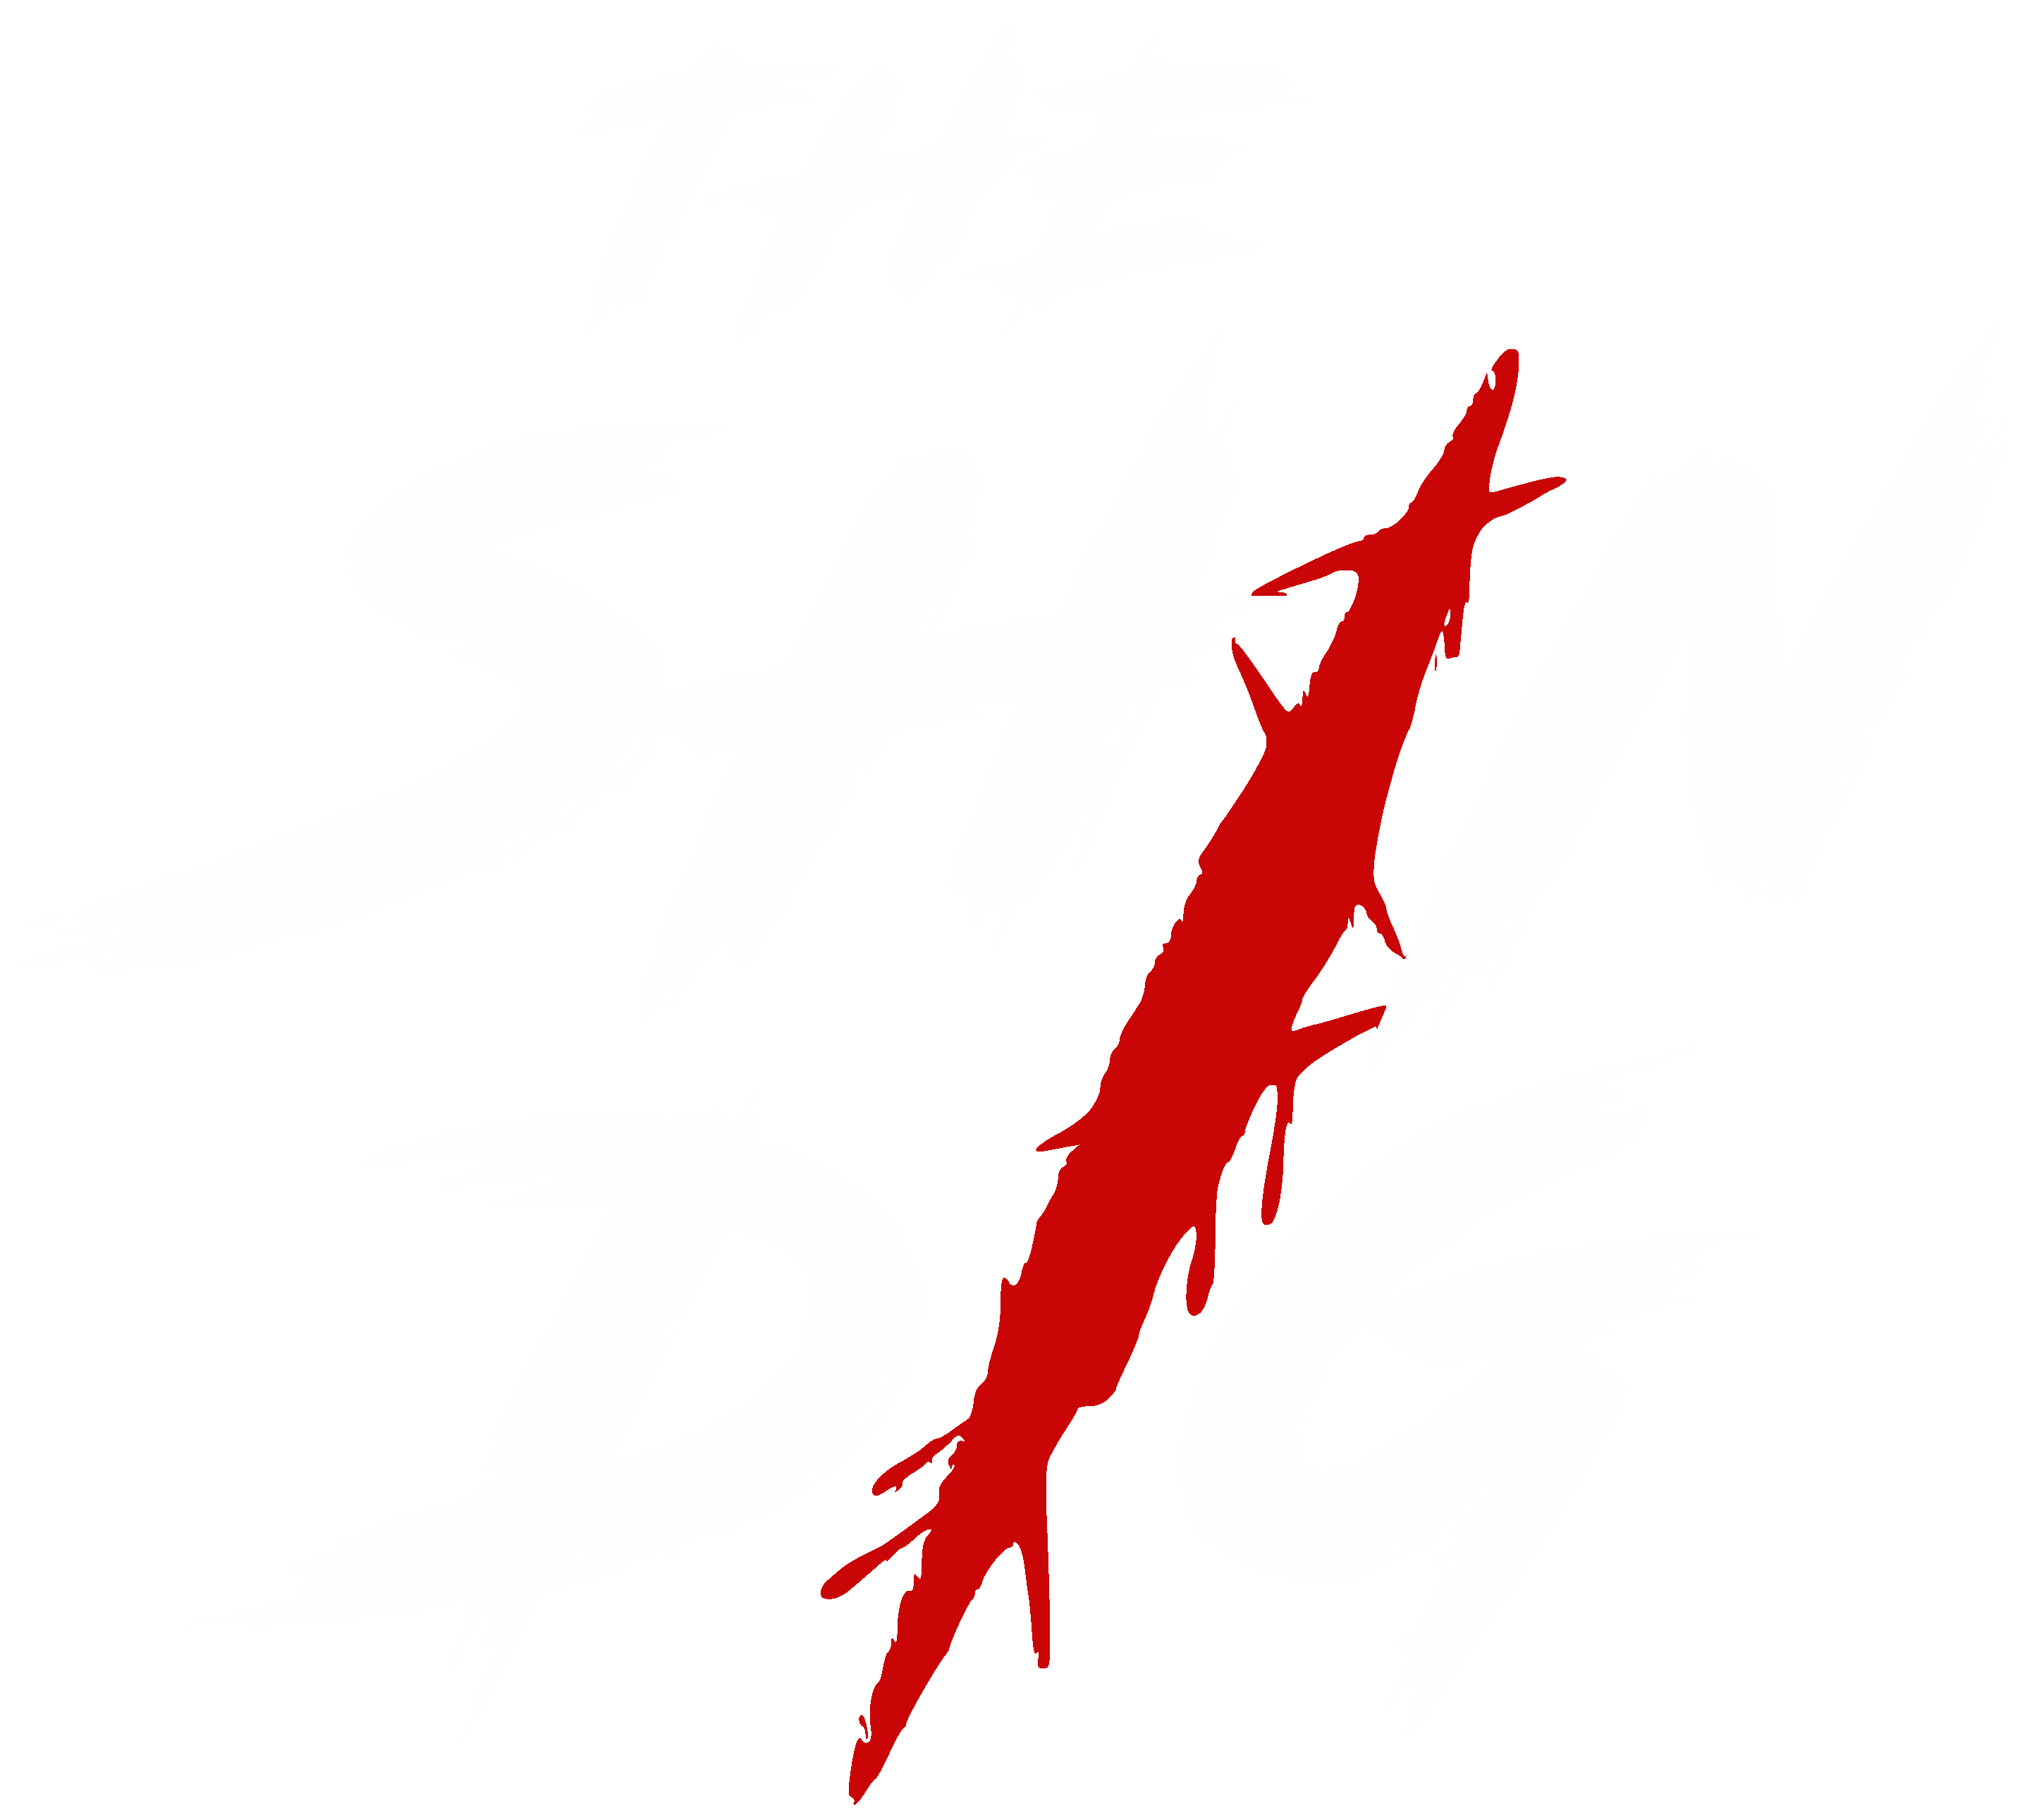 NEW! The Shin Dig - Shin Saver Kit